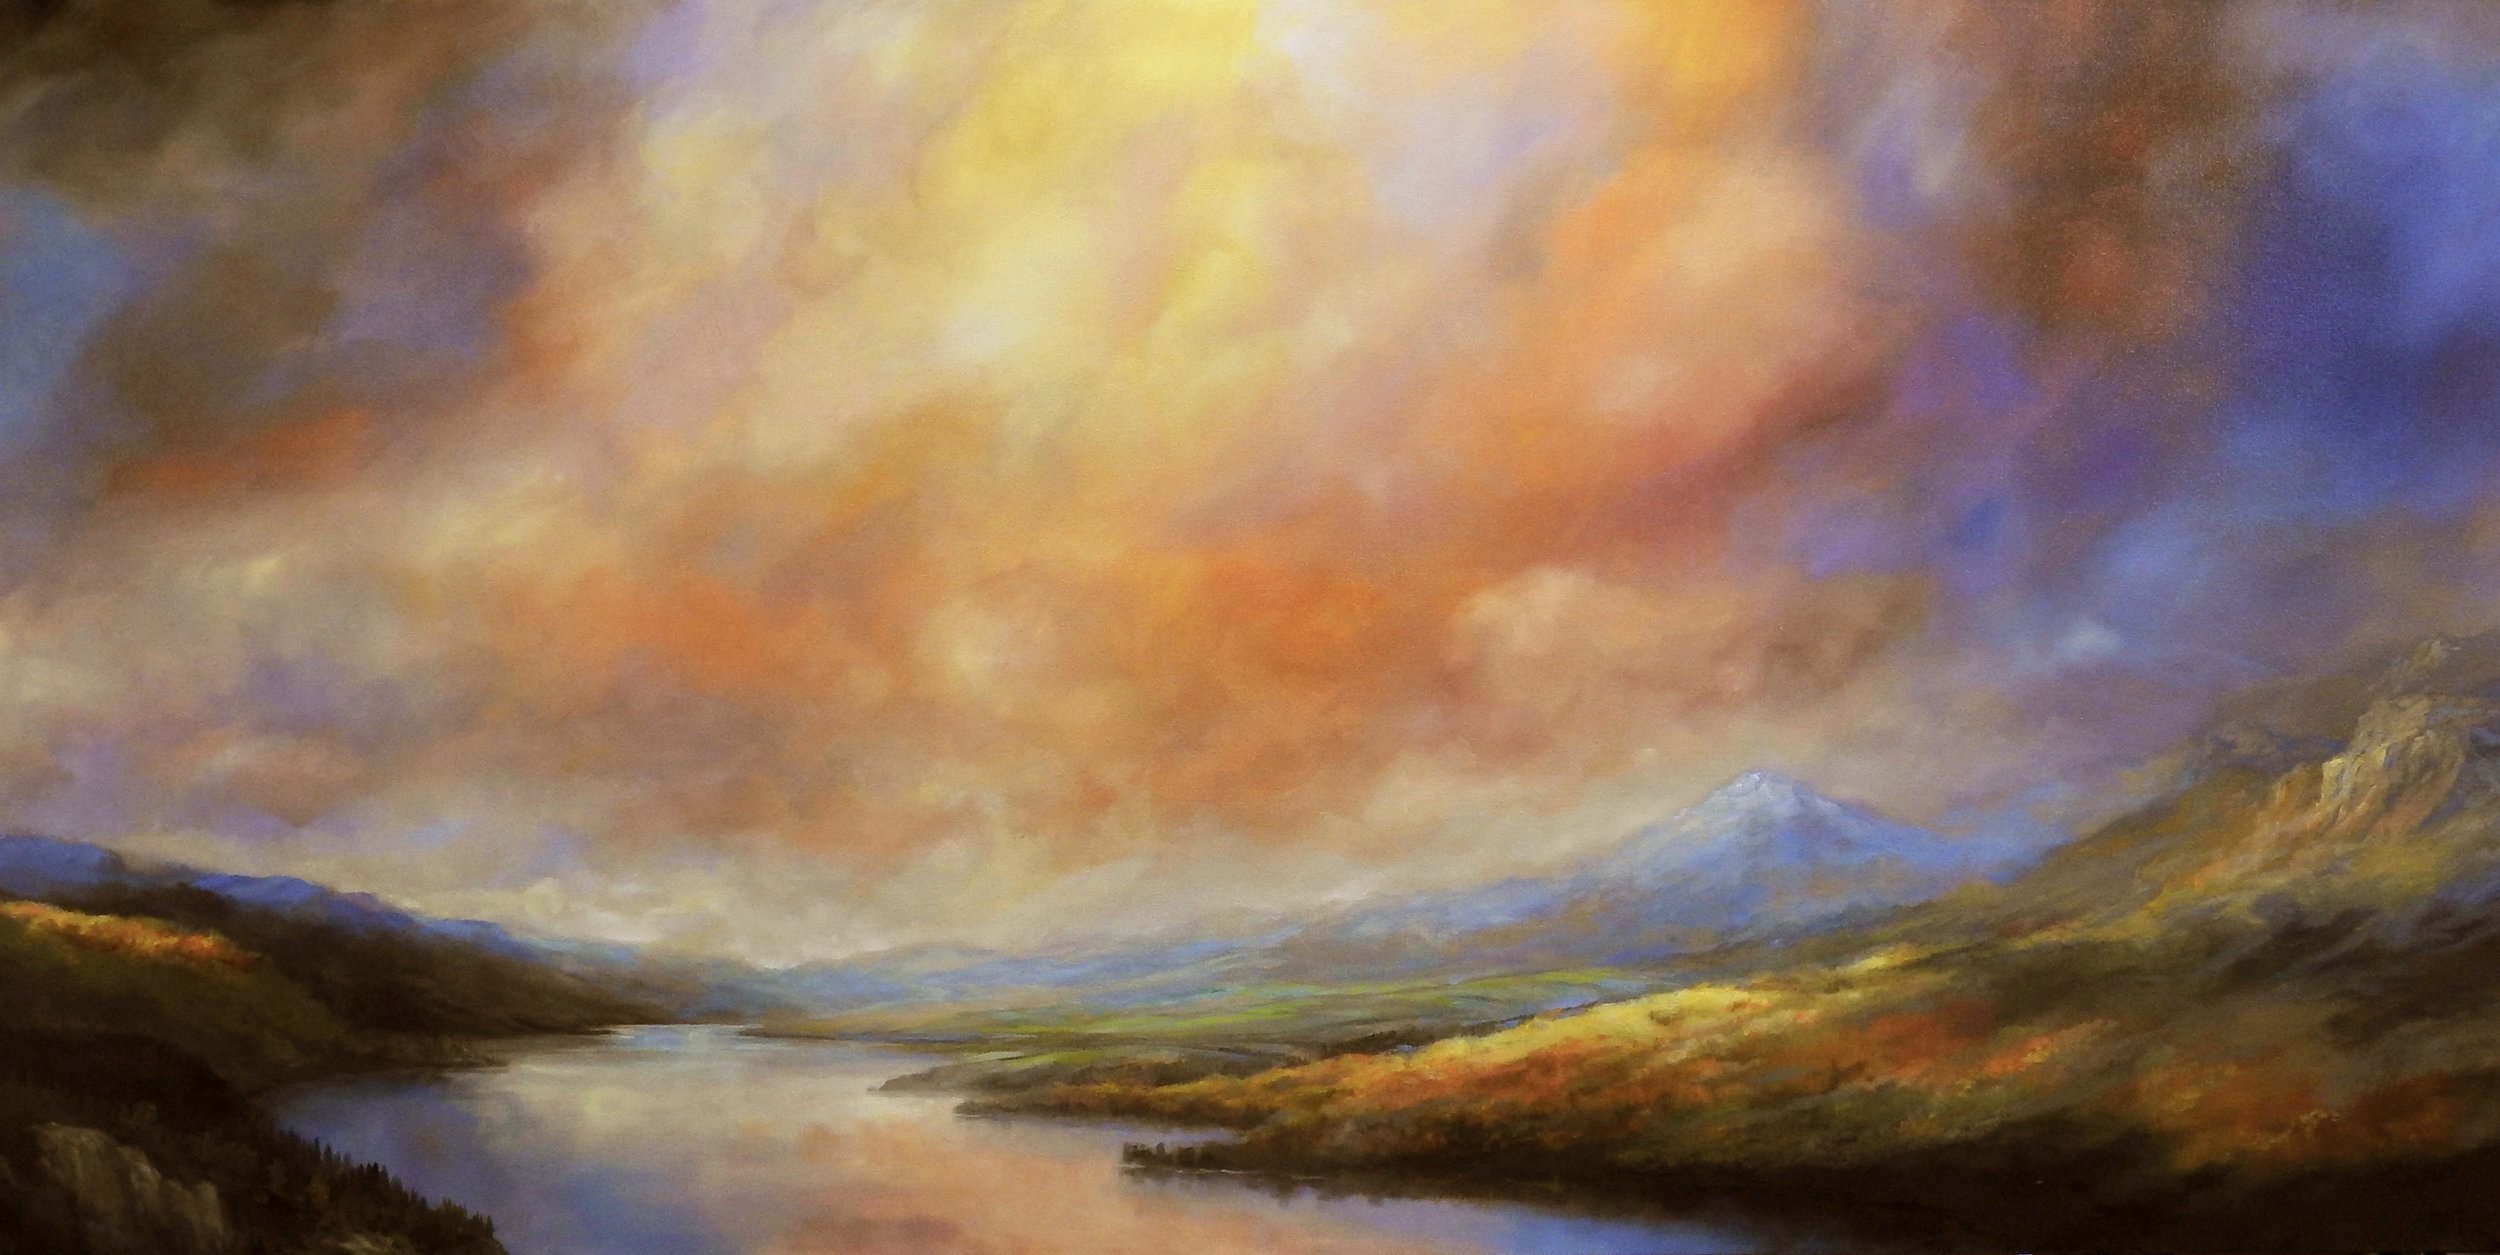 JWhite_Silence on the Wind_ oil on canvas 36x72_$7000.jpg